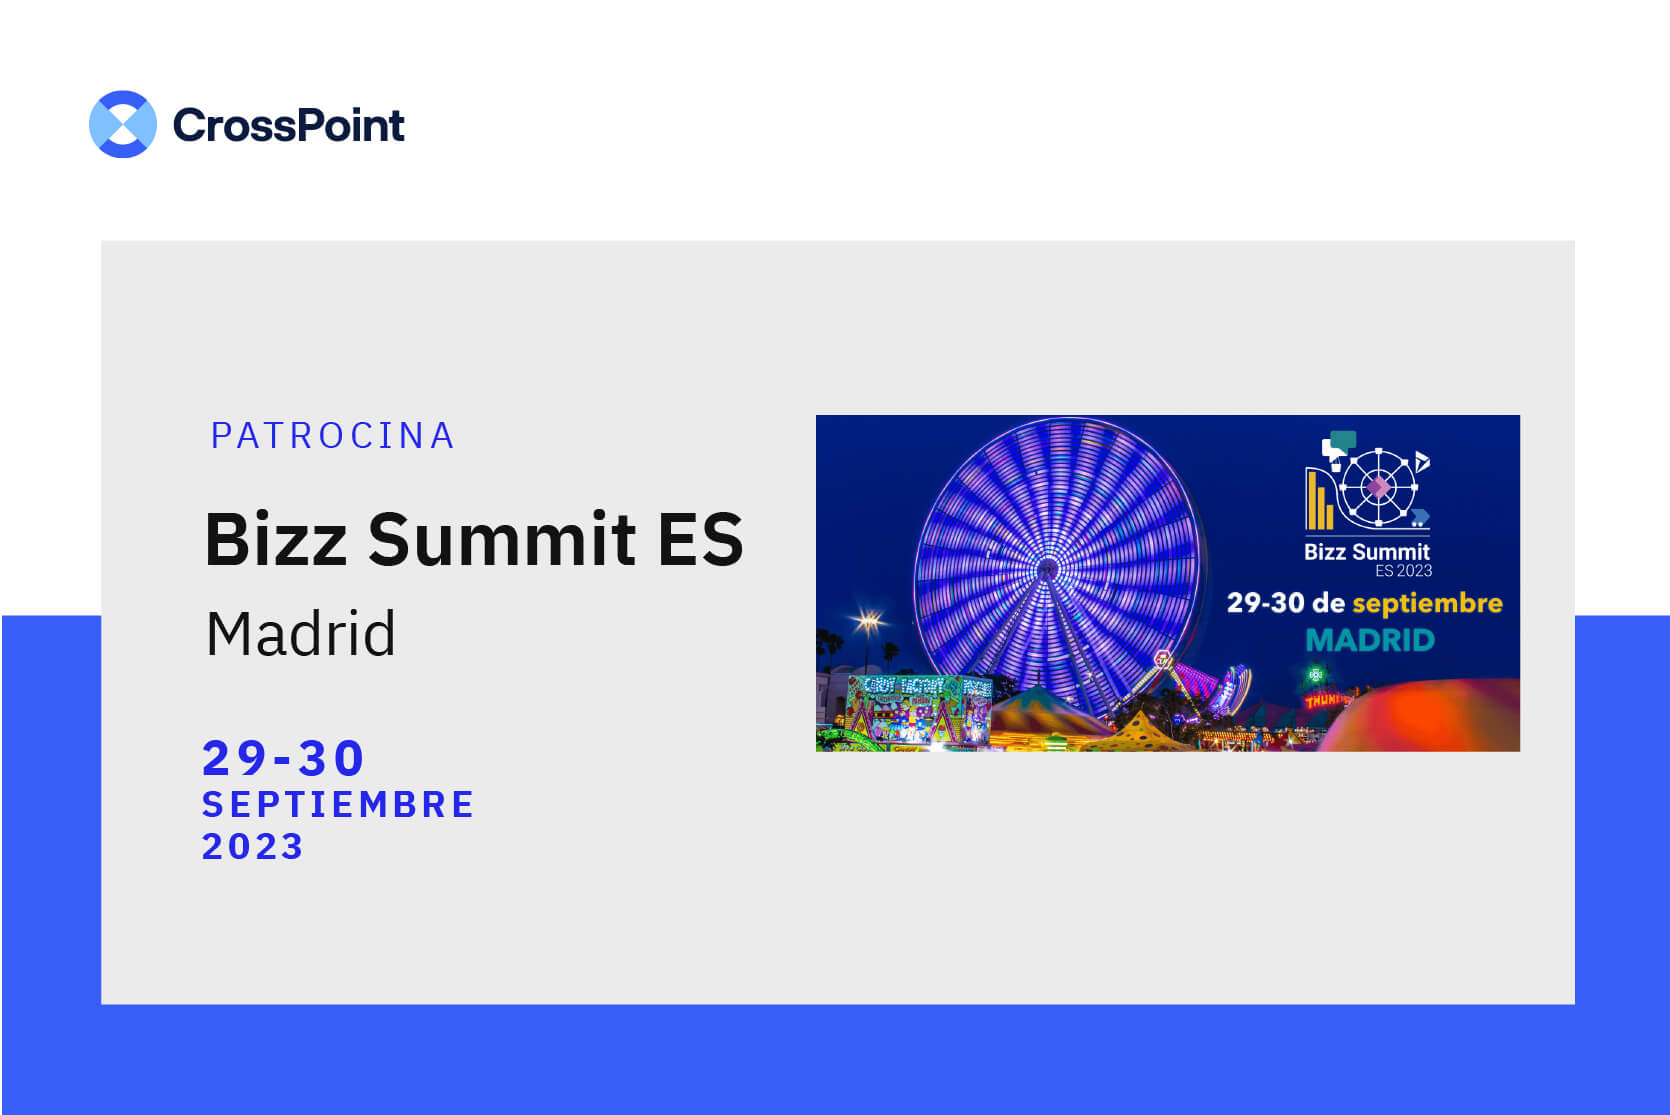 Cartel que anuncia que CrossPoint es patrocinador del Bizz Summit ES 2023, los días 29 y 30 de septiembre en Madrid